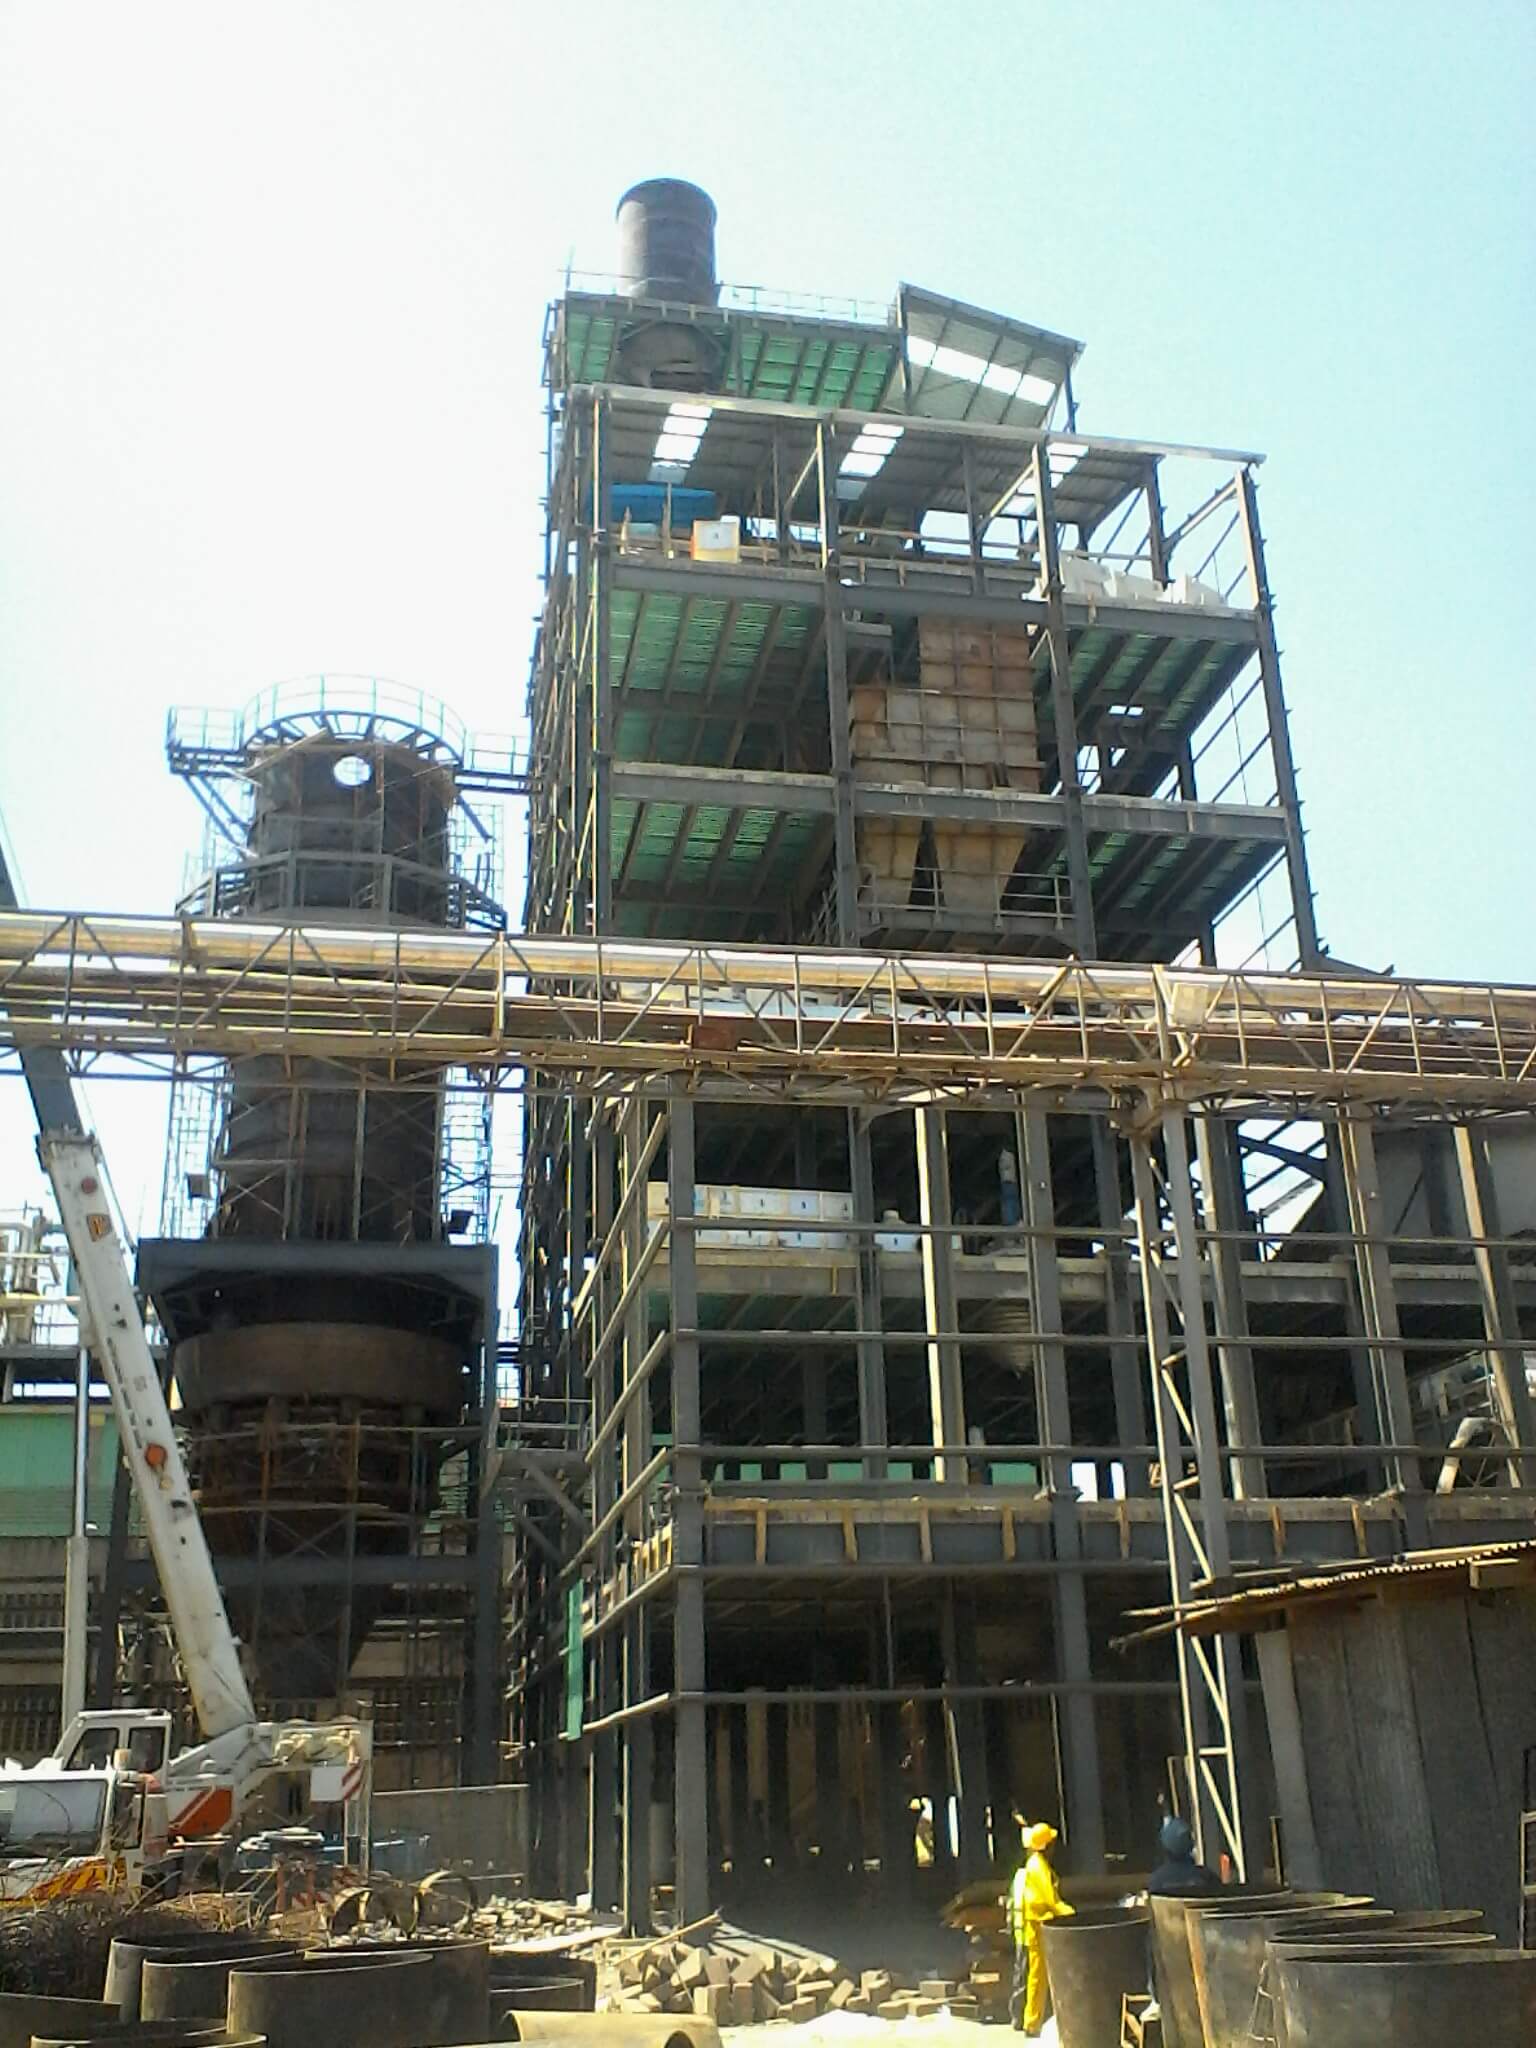 SSS4412-2016 - Oil Refinery Factory- Majunga, Madagascar